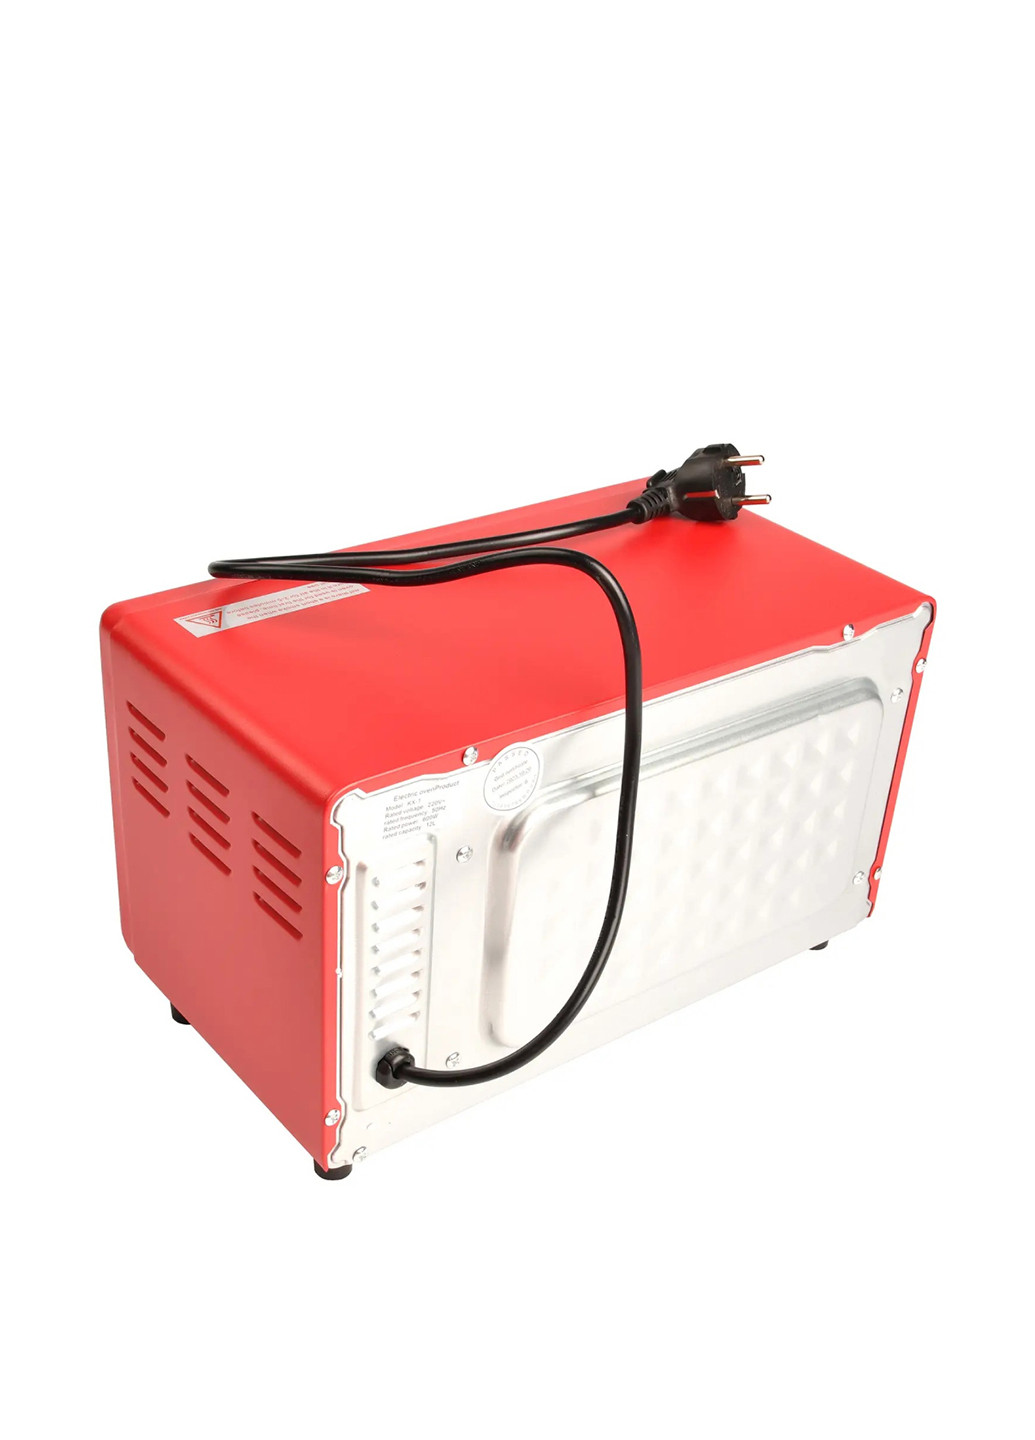 Мини-печь настольнаяс регулятором температуры, 32,5х18,5х20 см TV-magazin (293107081)